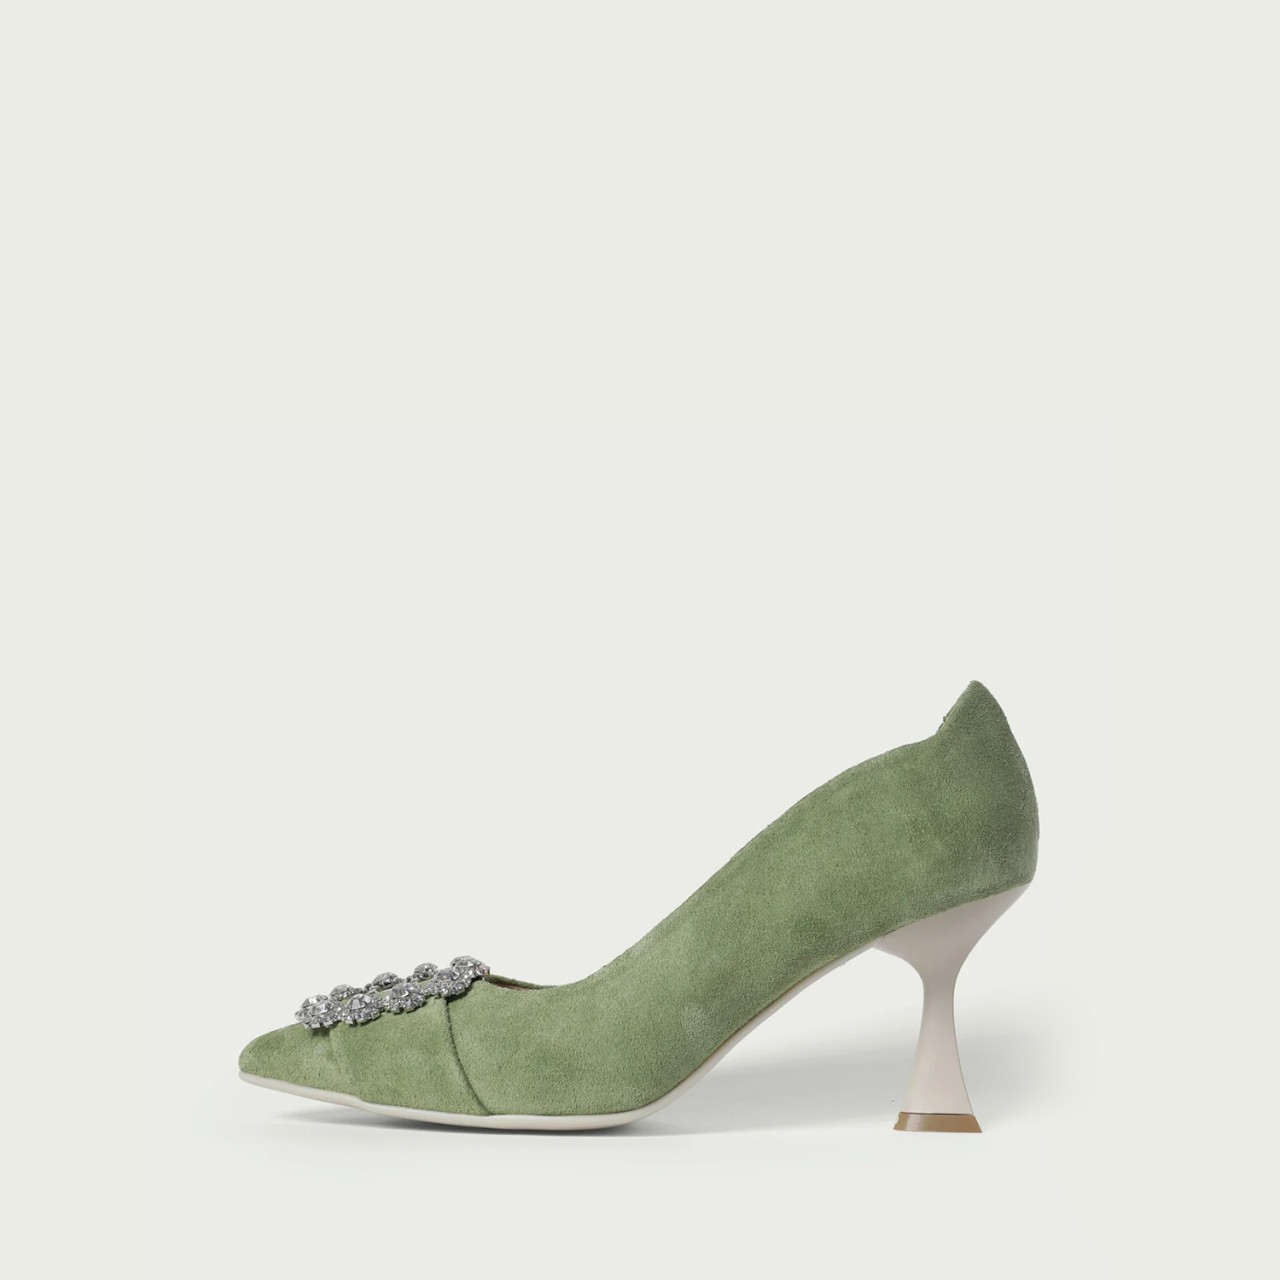 Pantofi stiletto cu toc subțire Innes din piele întoarsă naturală verde și accesoriu cristal